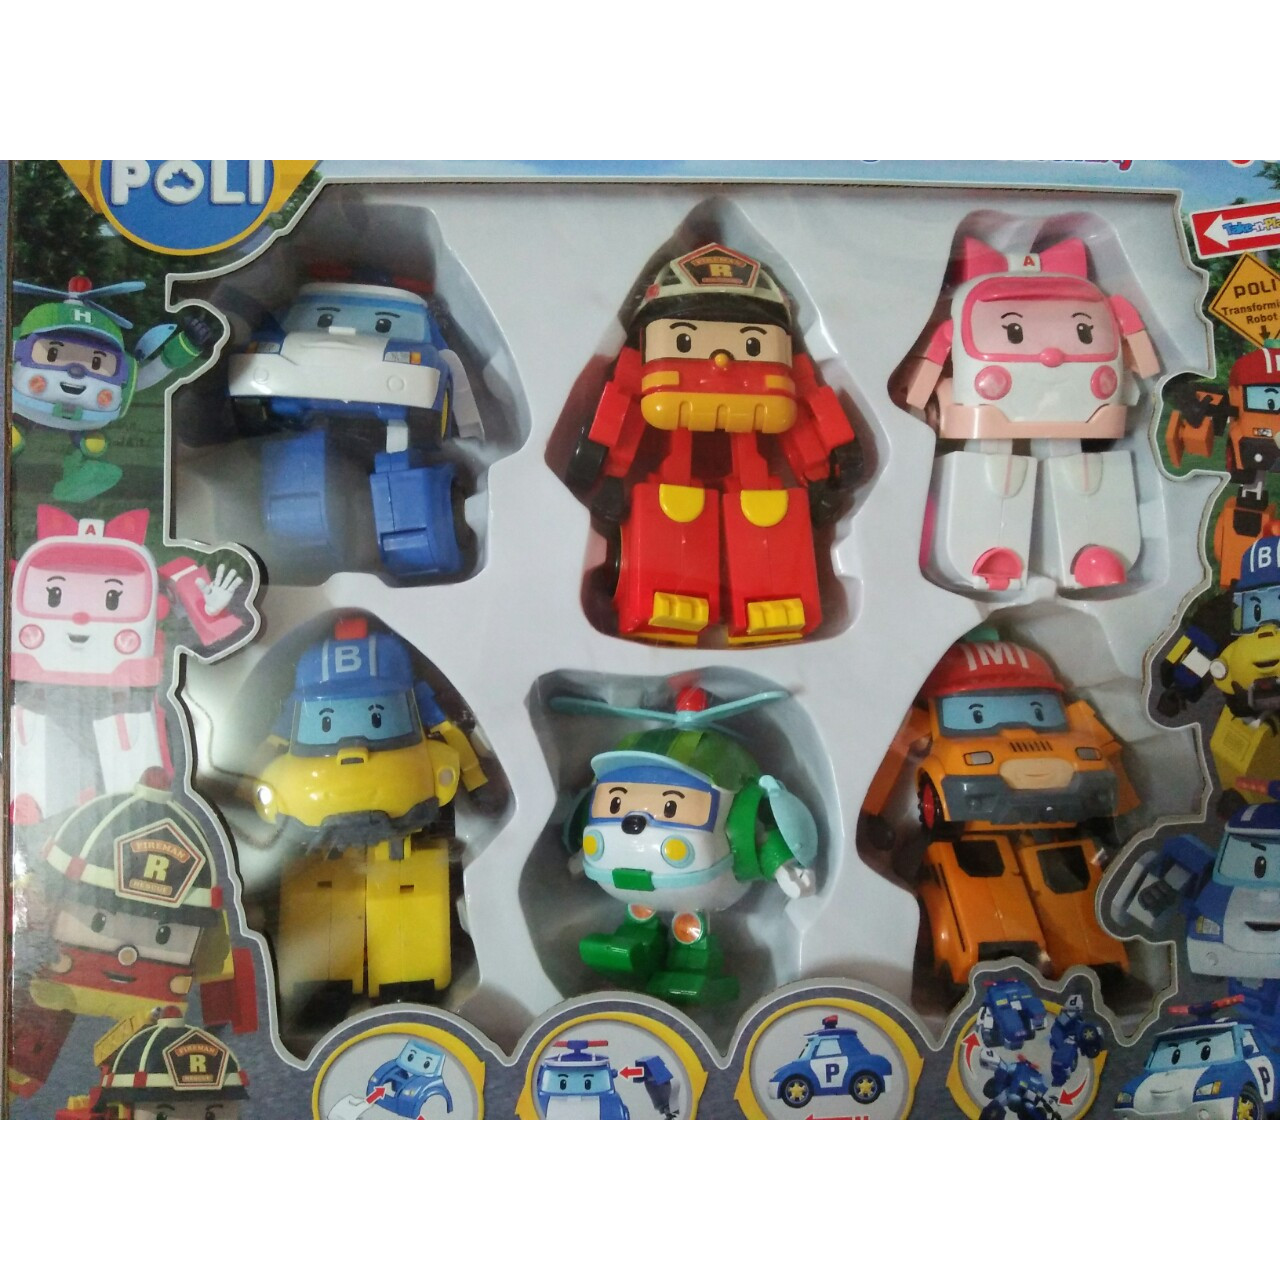 Đồ chơi ngộ nghĩnh đáng yêu - đồ chơi trẻ em - Bộ 6 chiếc xe đồ chơi biến hình biệt đội xe robocar Poli Super Wings